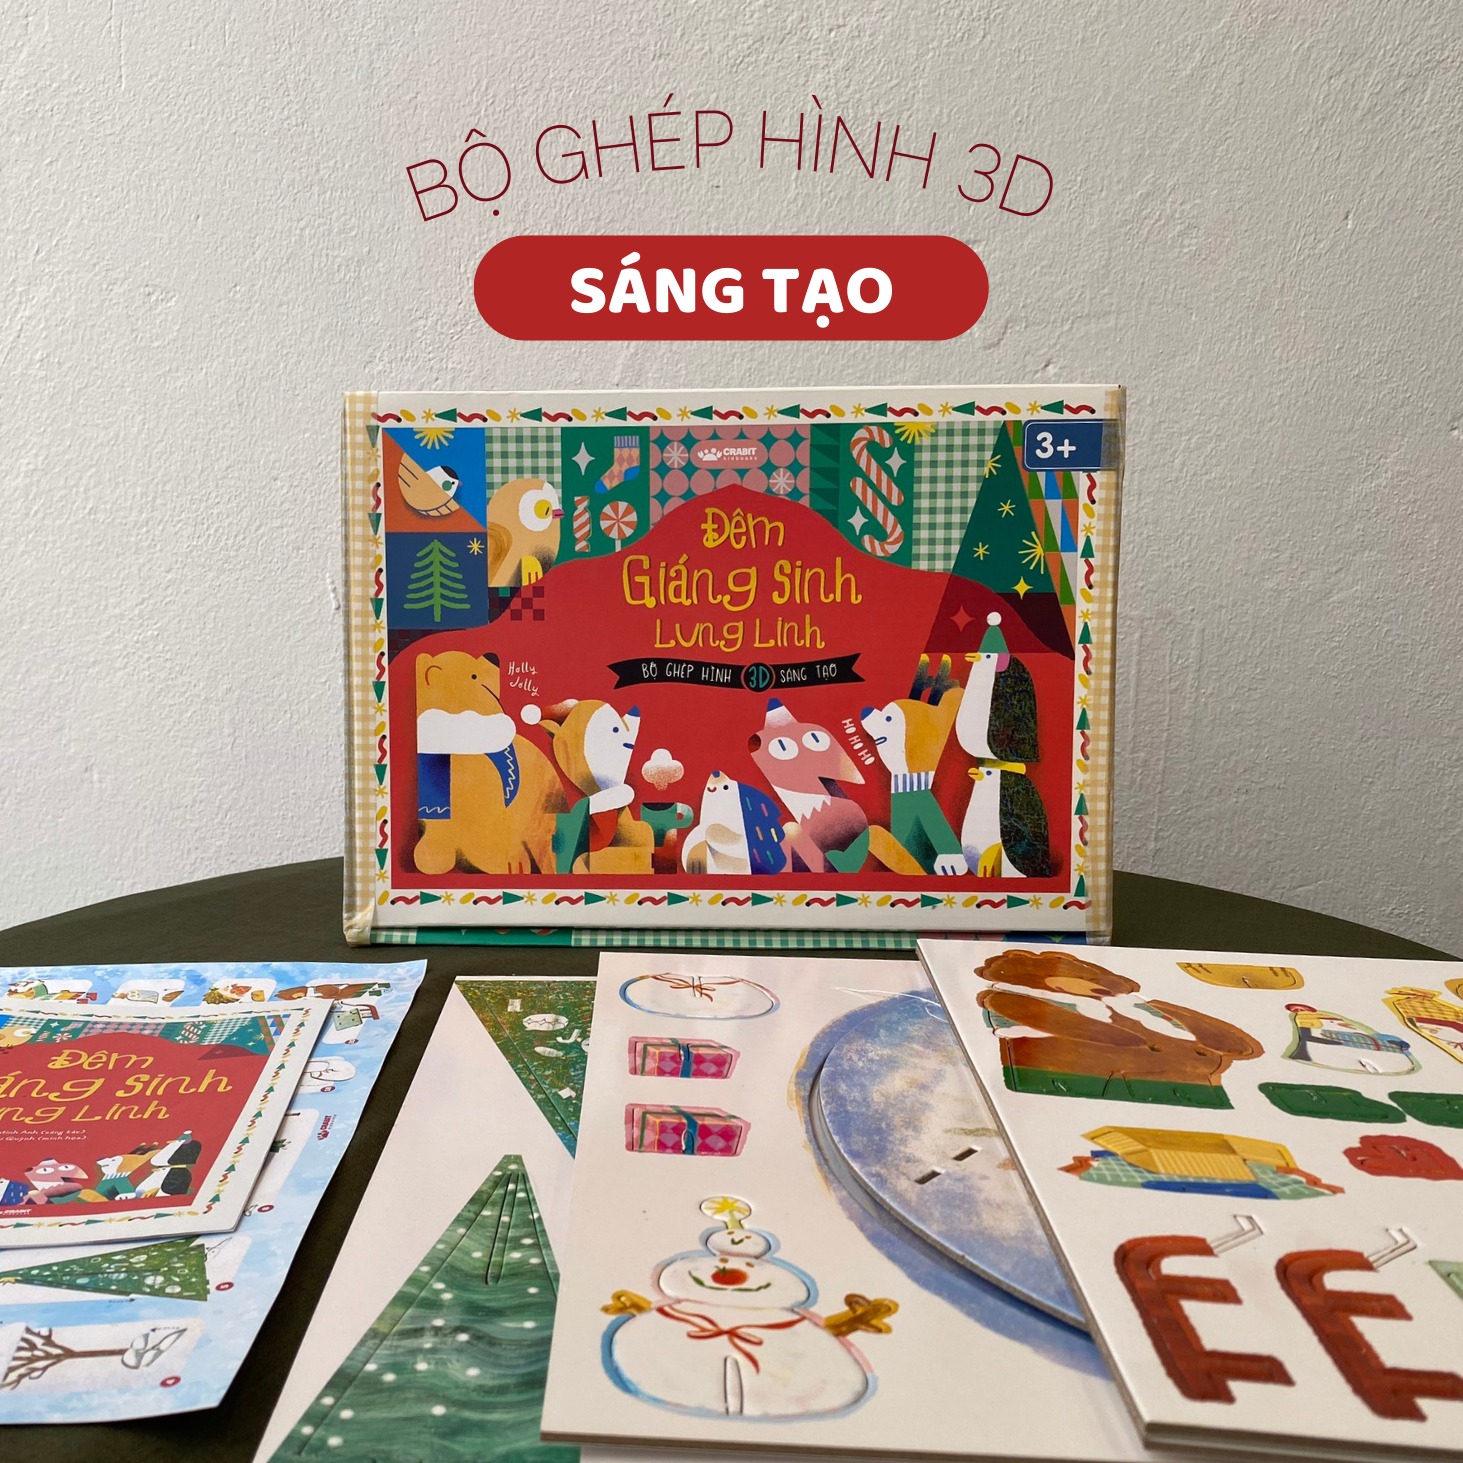 BỘ QUÀ TẶNG NOEL - Bộ ghép hình 3D Đêm Giáng SInh Lung Linh - Dành cho trẻ từ 3 tuổi - Crabit Kidbooks